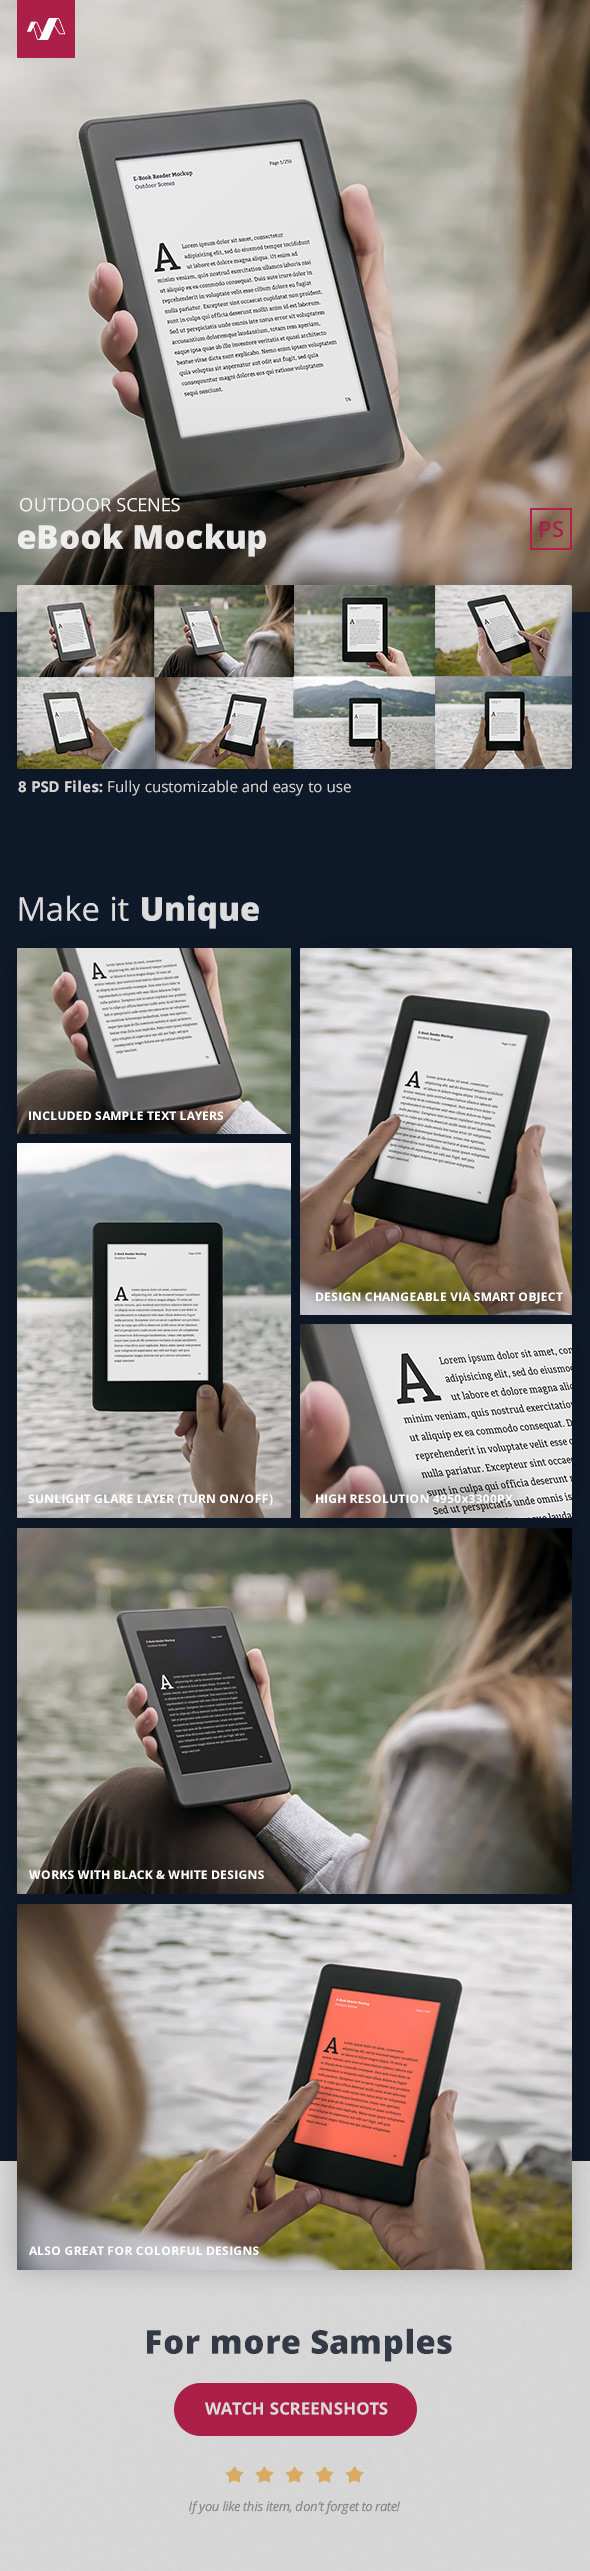 8款电子书屏幕演示样机模板素材 eBook Mockup Outdoor Scenes 2插图